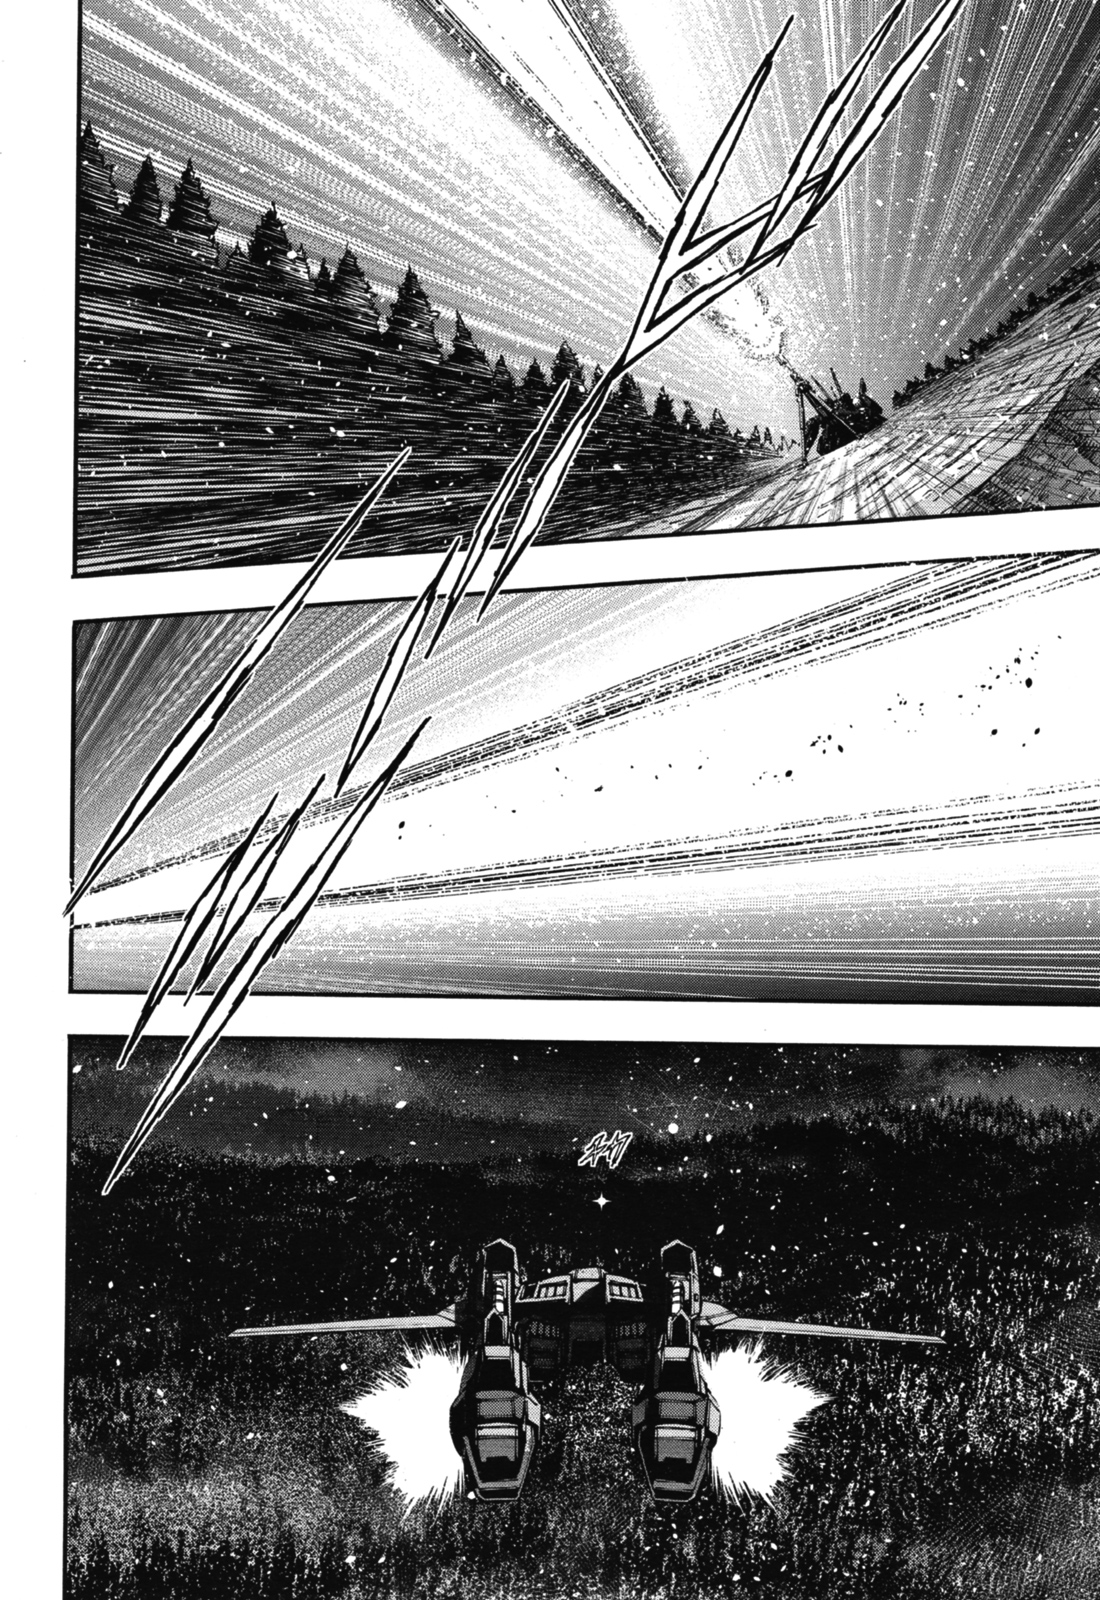 Kidou Senshi Gundam NT (Narrative) Ch. 2 The Third Brother